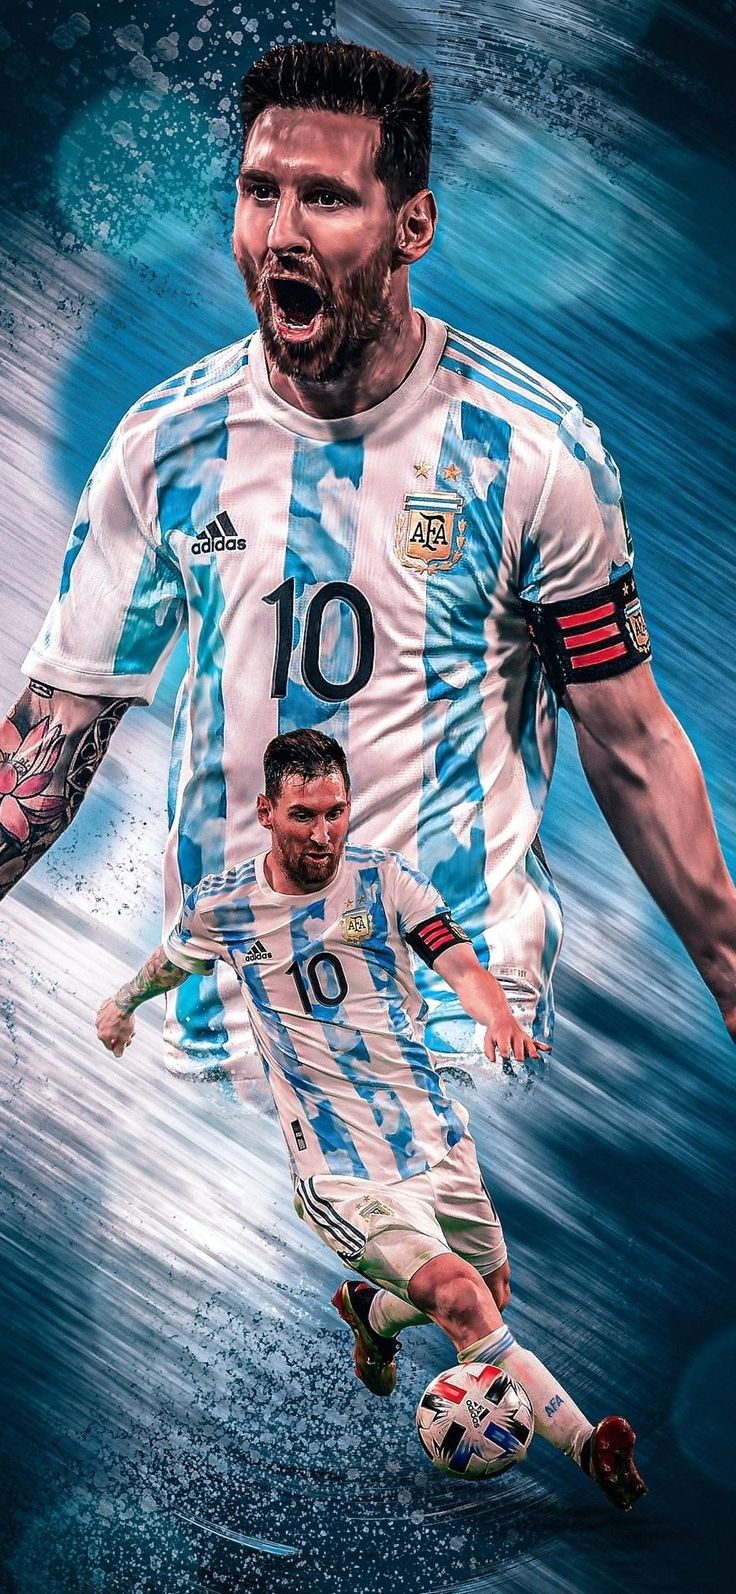 Argentina: Đội tuyển bóng đá nổi tiếng với các ngôi sao hàng đầu và phong cách chơi bóng đá tuyệt vời. Xem ảnh liên quan đến Argentina để được ngắm nhìn những khoảnh khắc đẹp nhất của đội tuyển này.